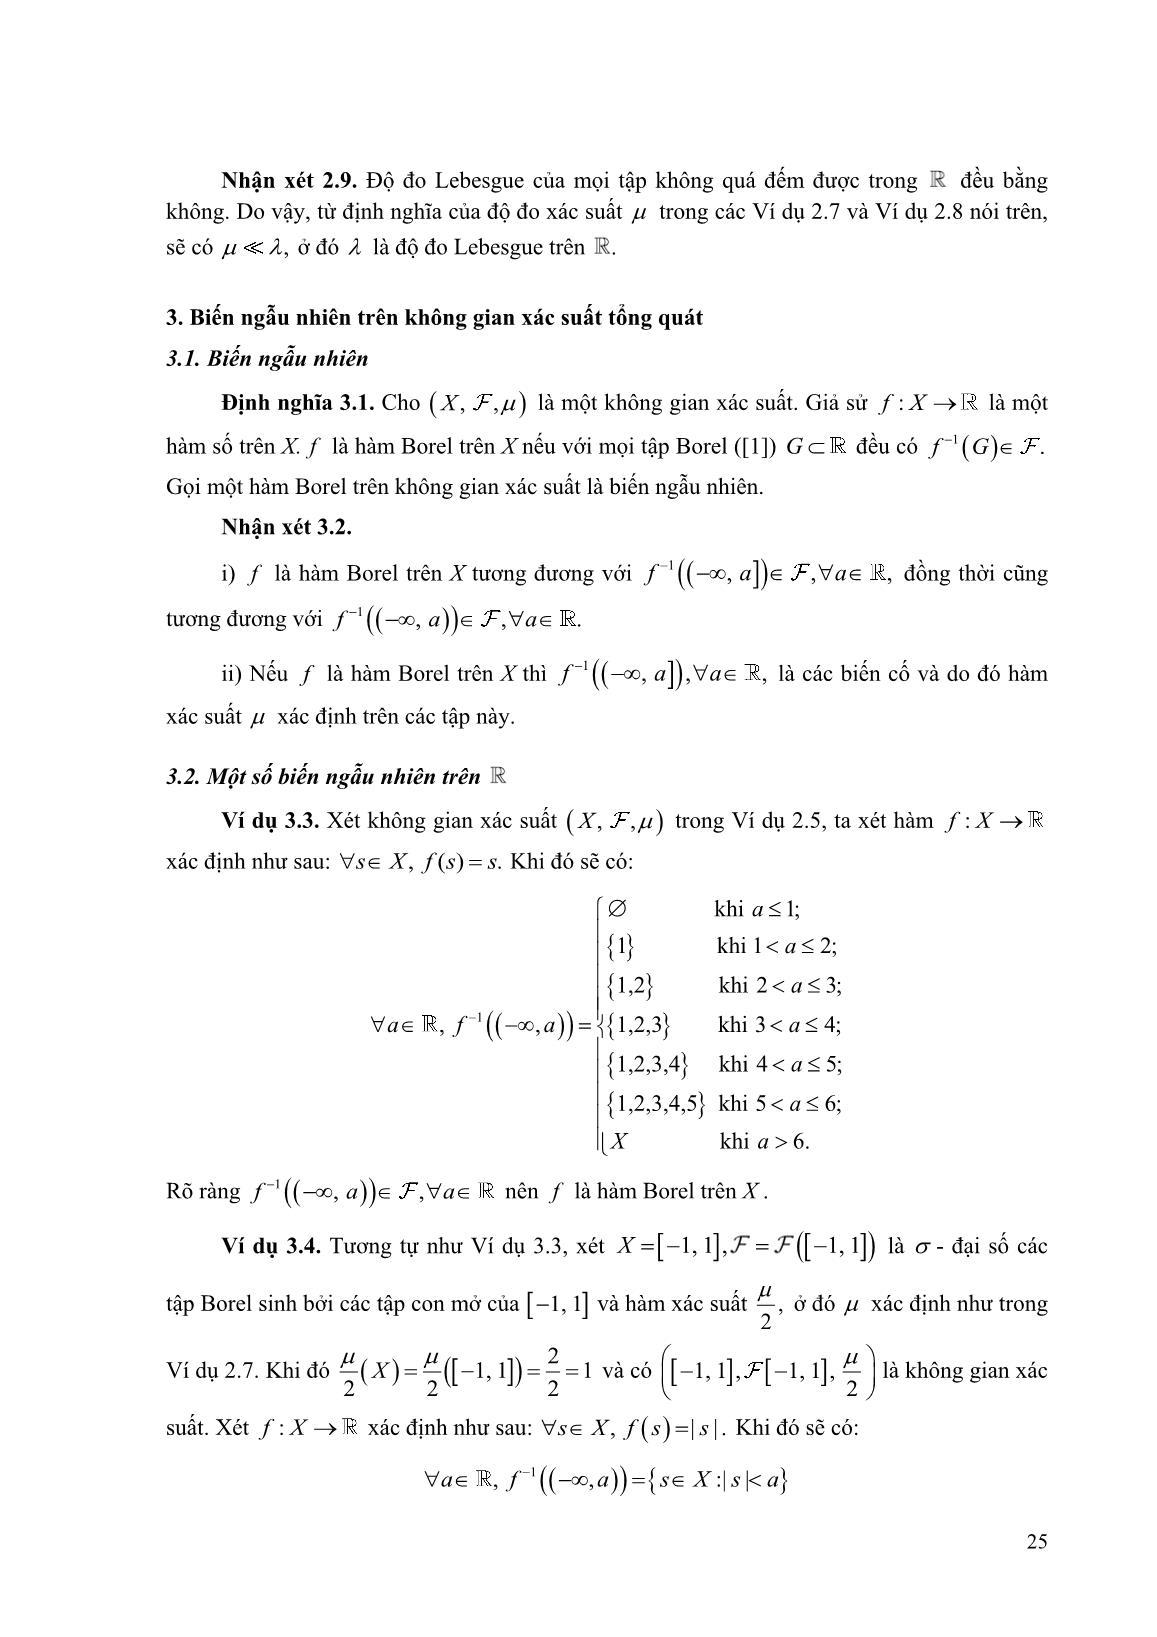 Một số không gian xác suất trên R trang 4